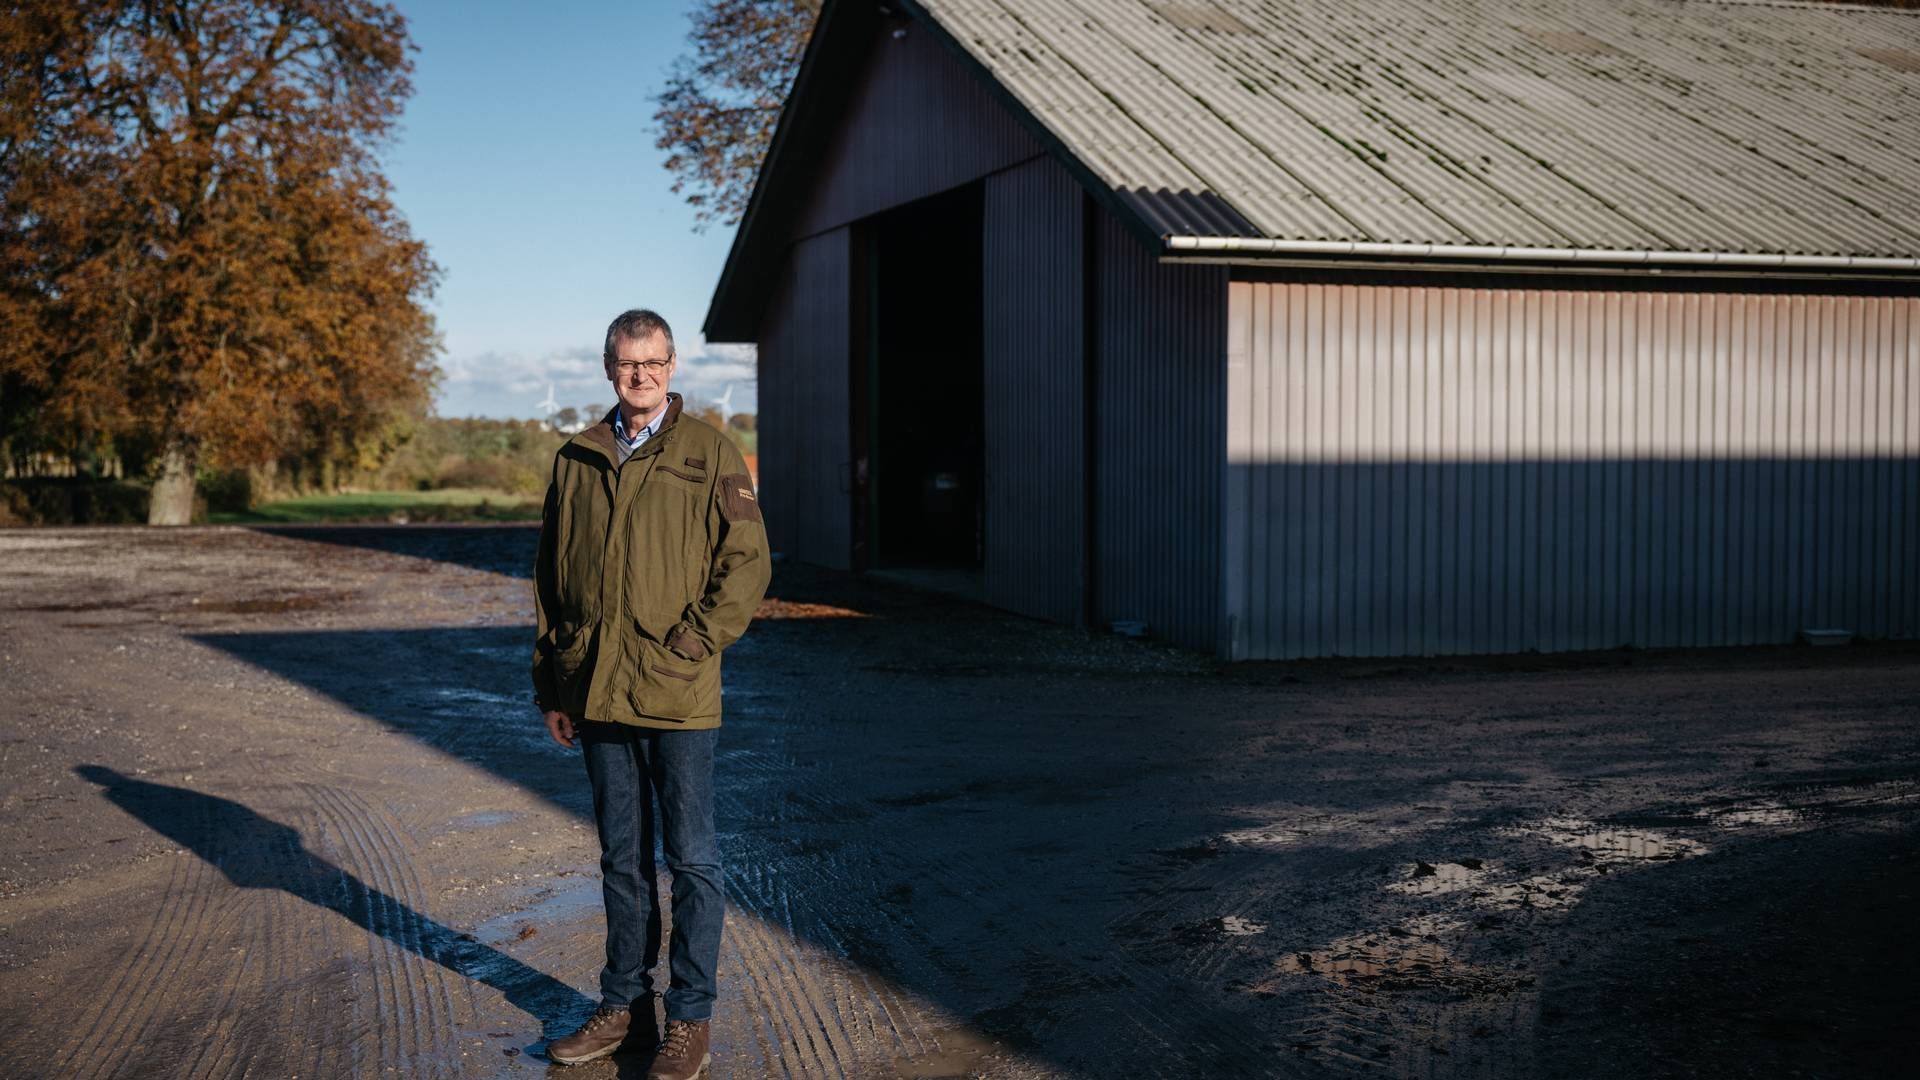 Fra en fuld kalender - blandt andet med forestående aflæggelse af Danish Crowns regnskab om under to uger - står Erik Bredholt nu med en markant mere fri hverdag på sit landbrug.